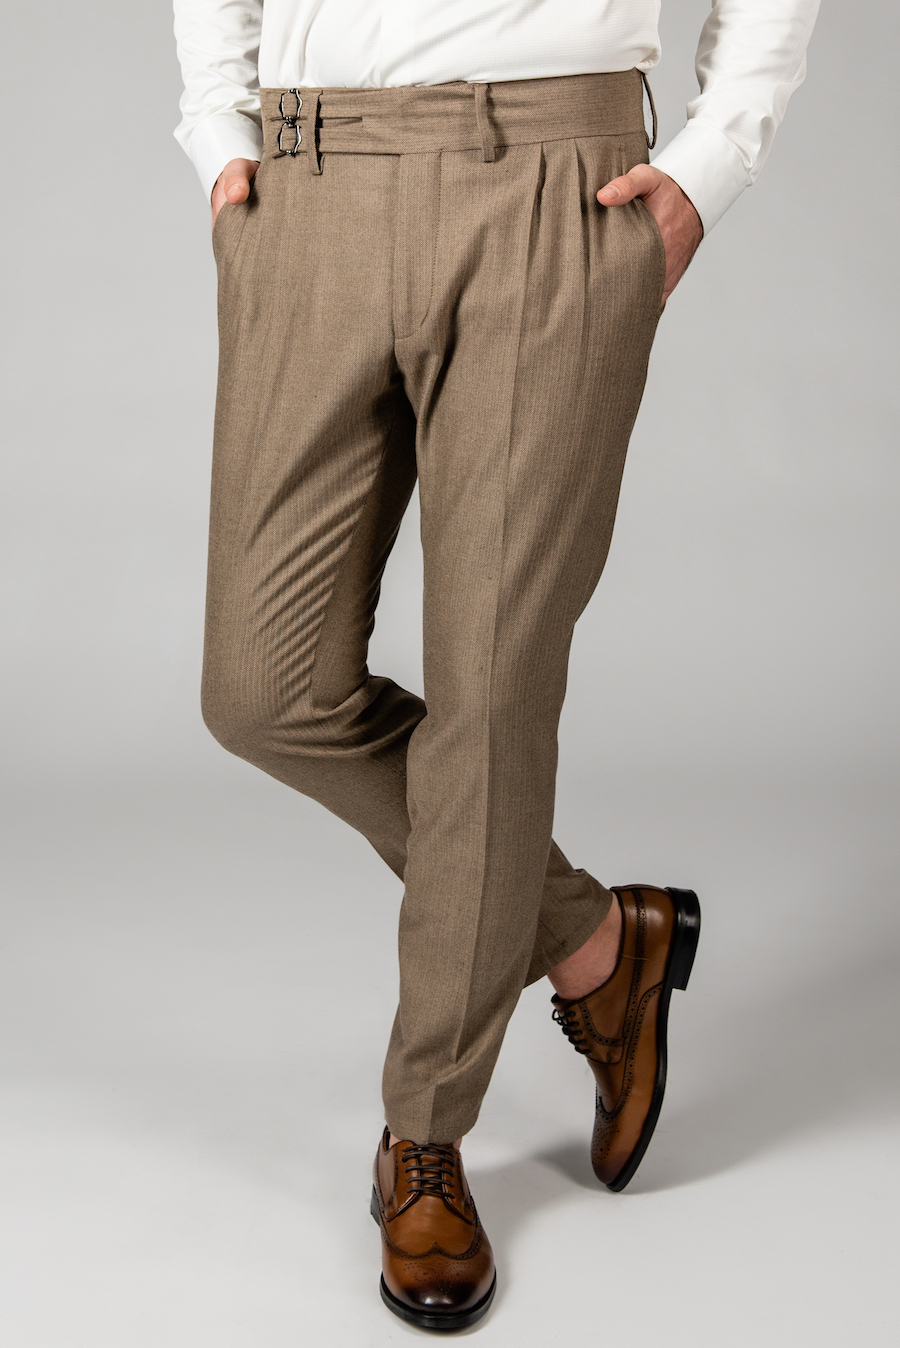 Мужские брюки с защипами. Арт.:6-1434-3 – купить в магазине мужской одеждыSmartcasuals